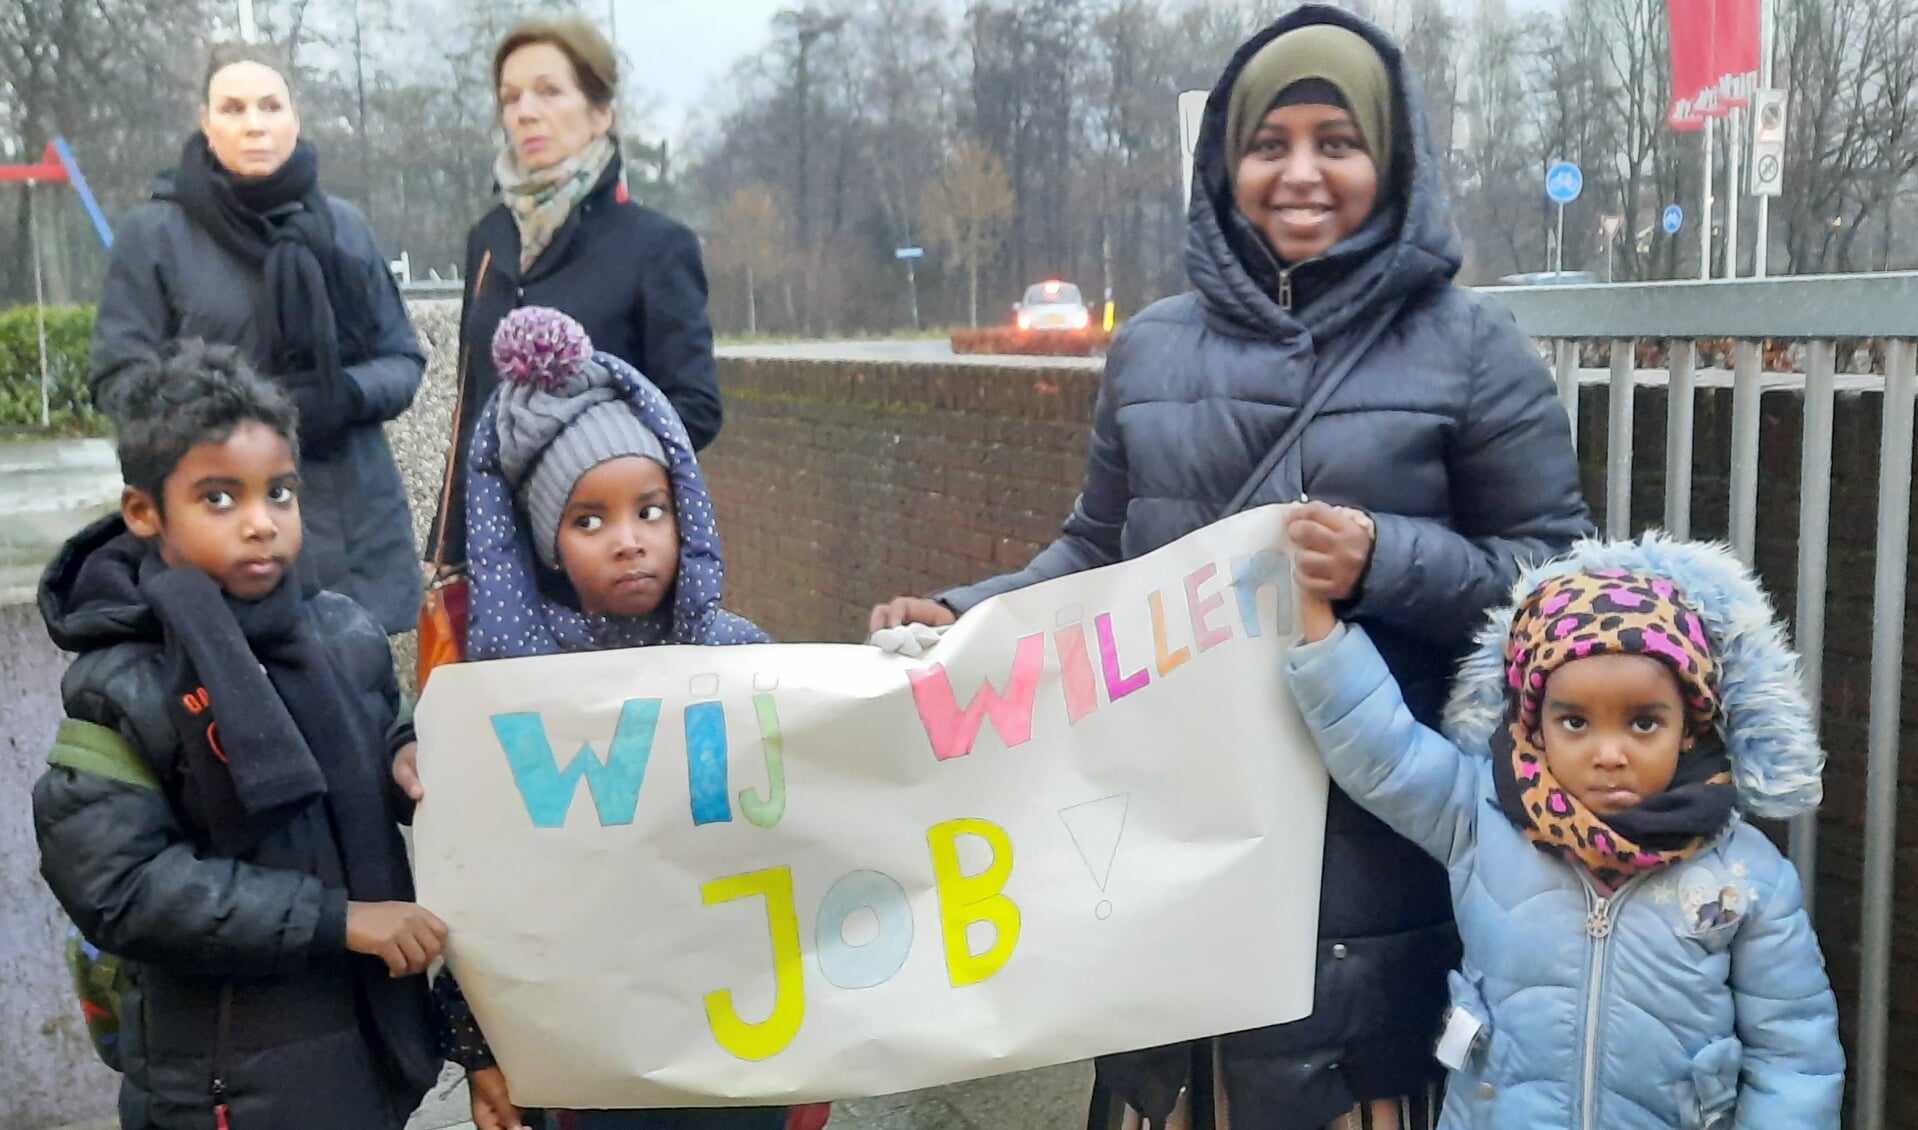 De protesten van ouders en leerlingen waren niet van de lucht op het schoolplein van de Wereldwijzer. Op de achtergrond kijkt interim-bestuurder Hilde Vogelzang (rechts) belangstellend toe.